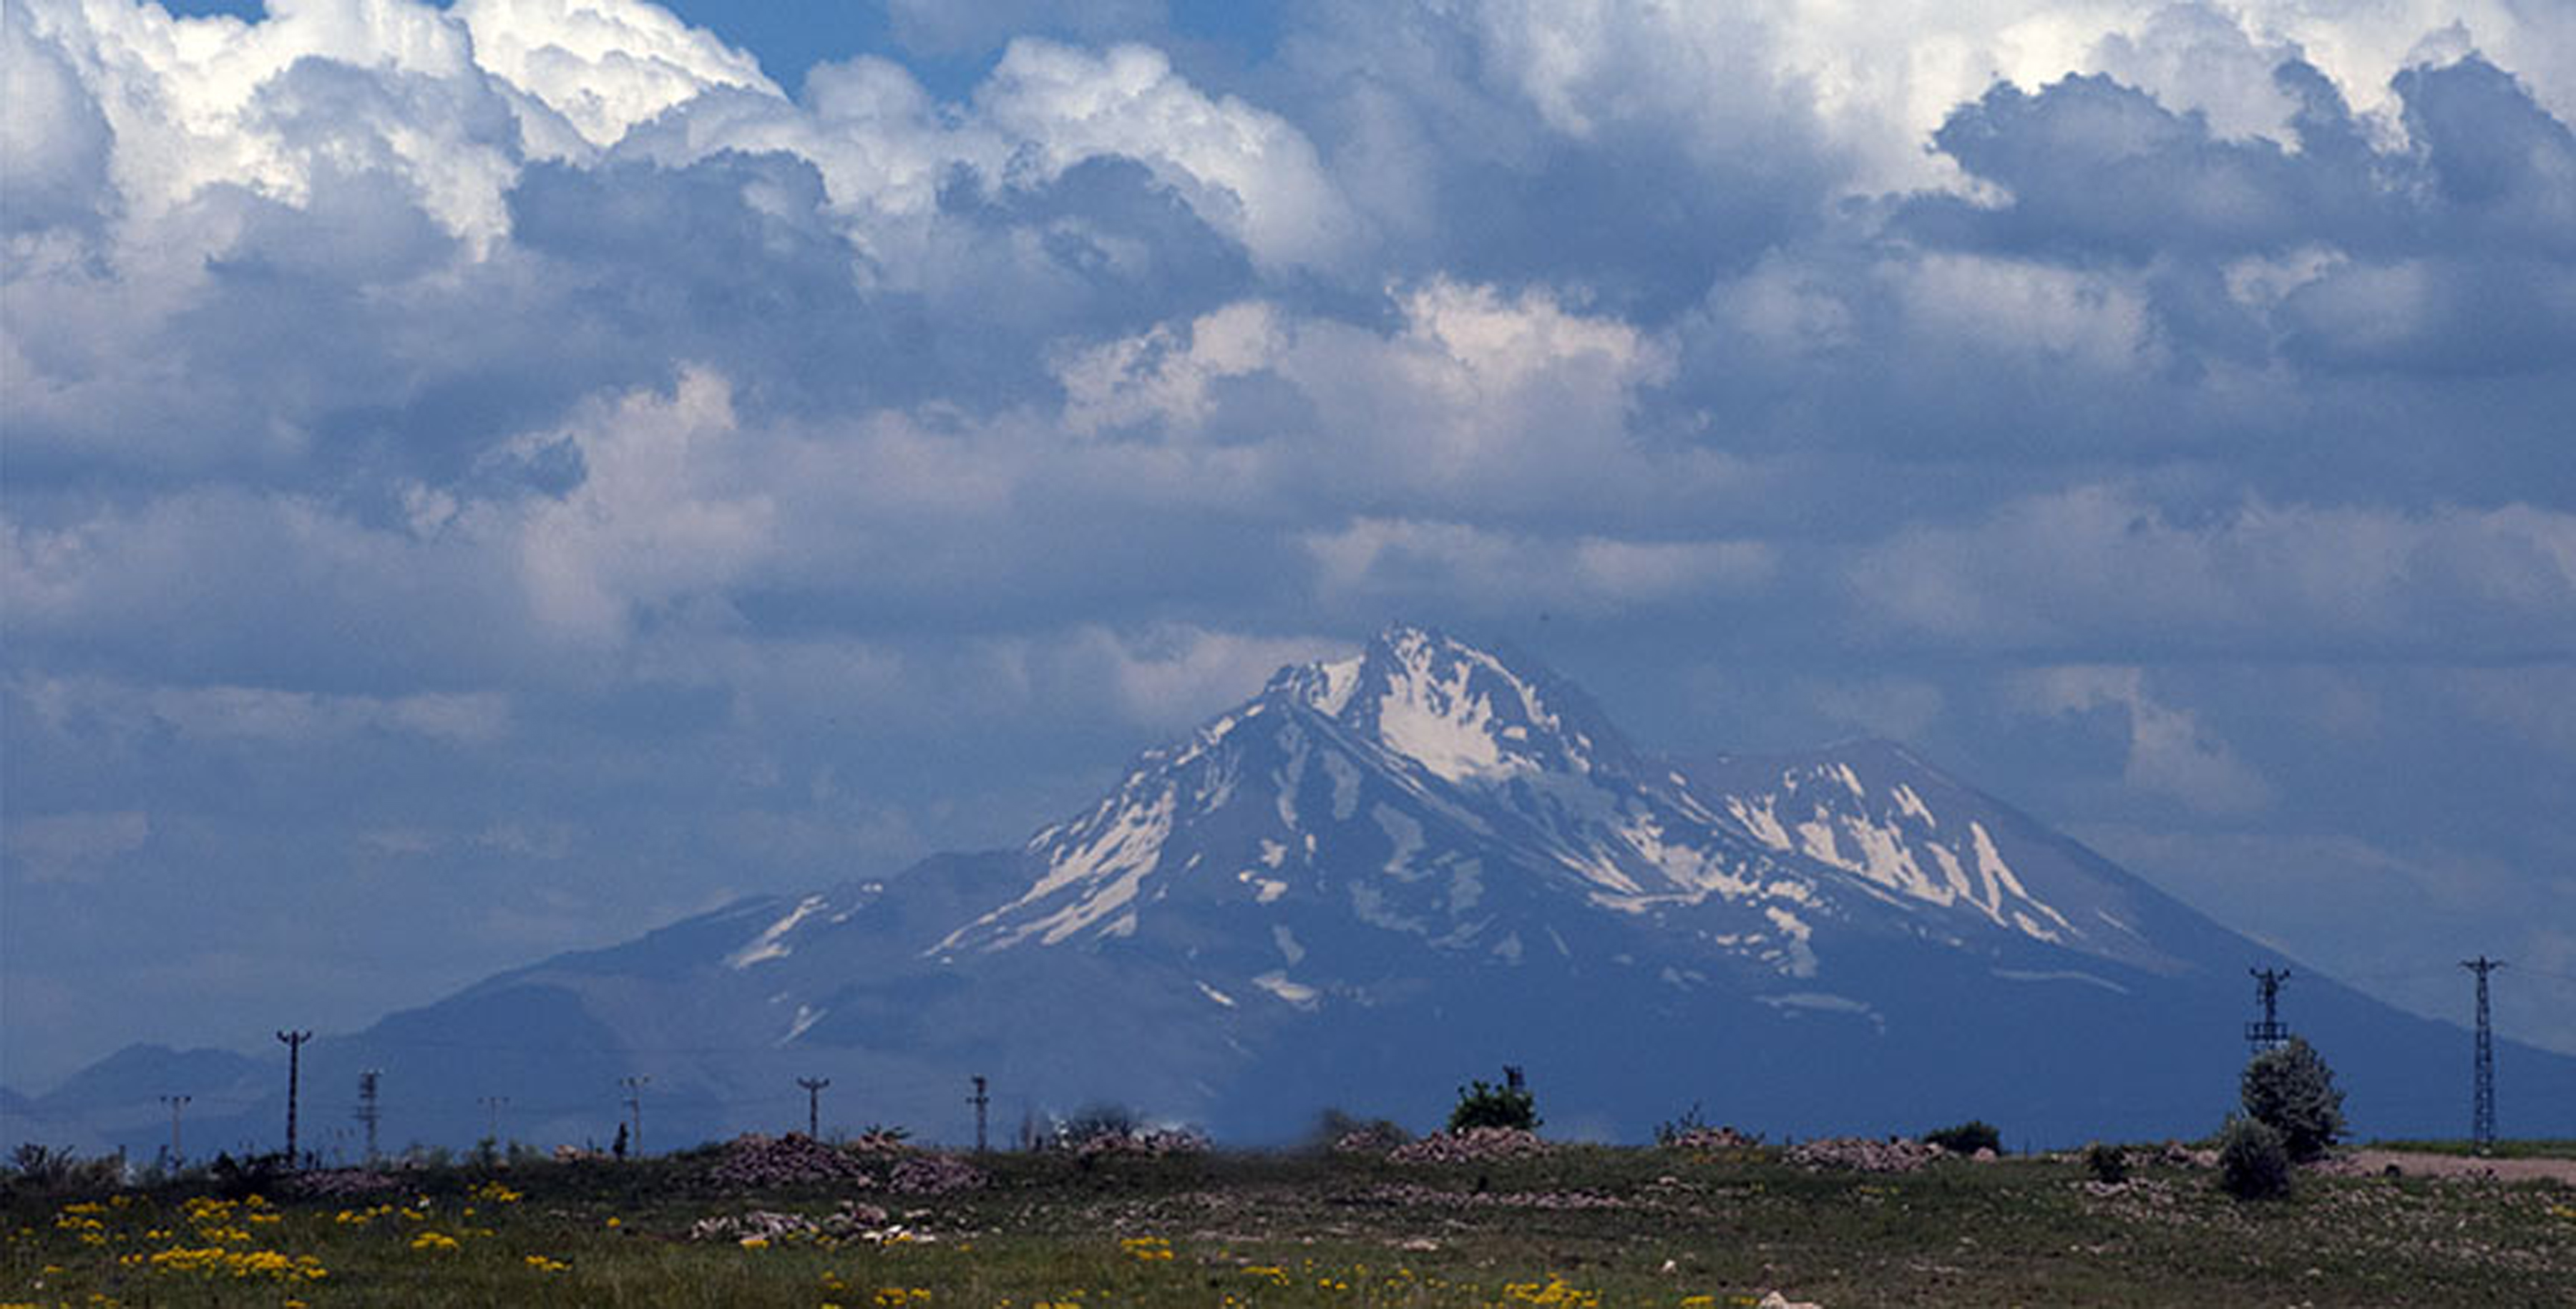 Mount Erciyes, Turkey's largest stratovolcano, with snow on its slopes (photo: Sugato Mukherjee)